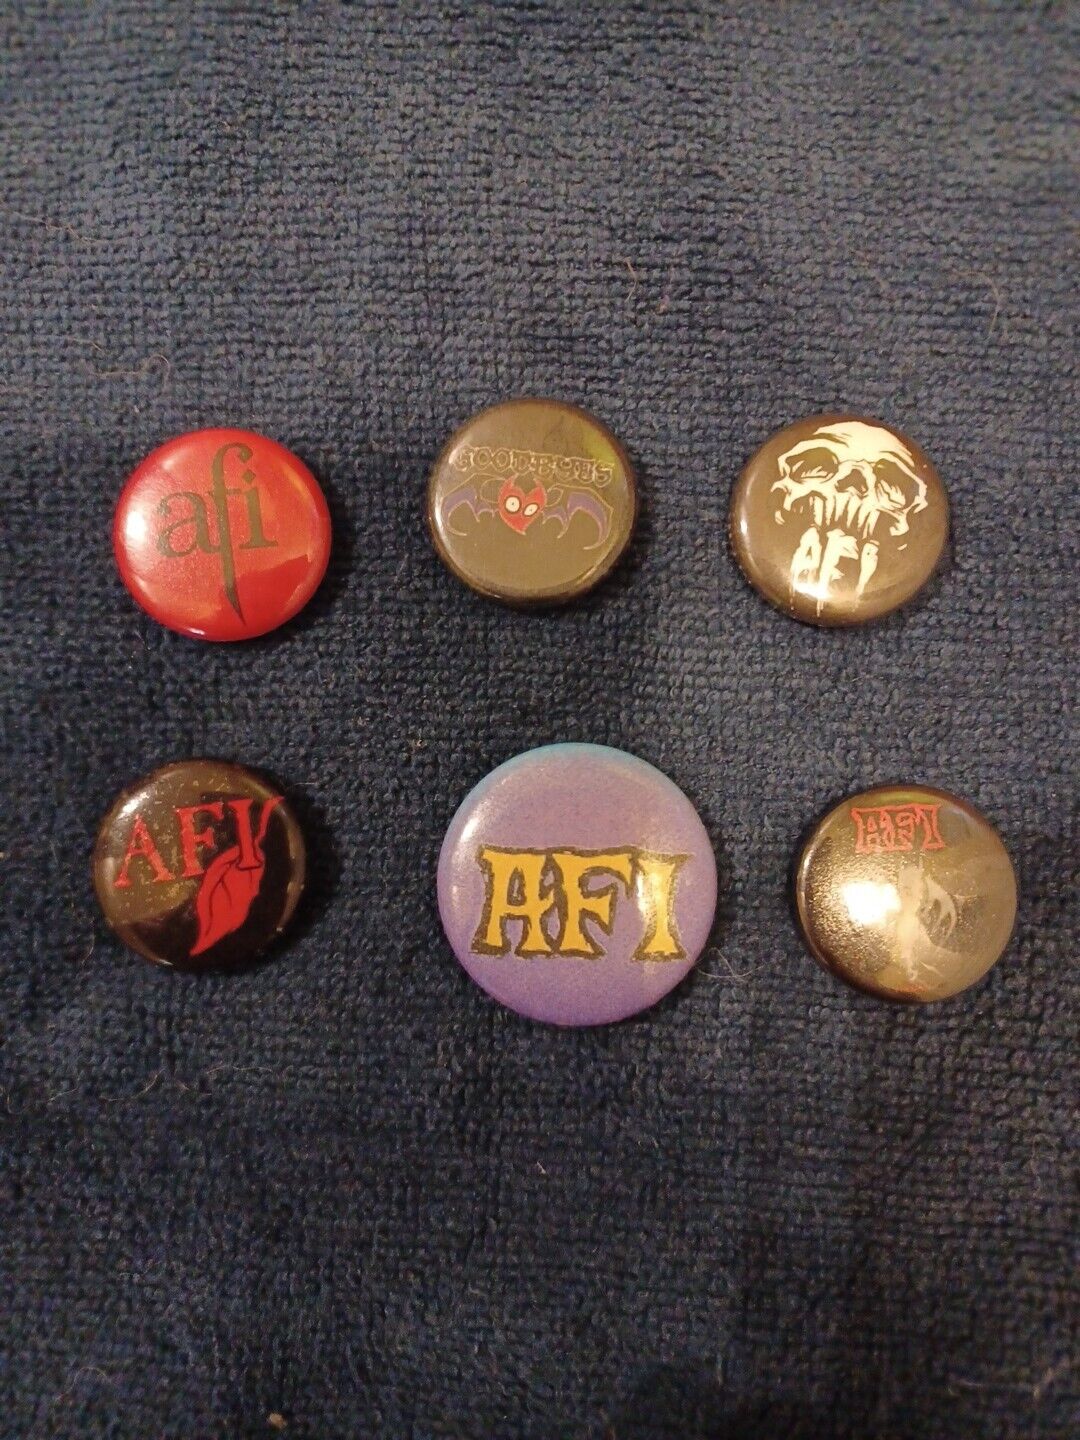 Afi Vintage Pin Lot